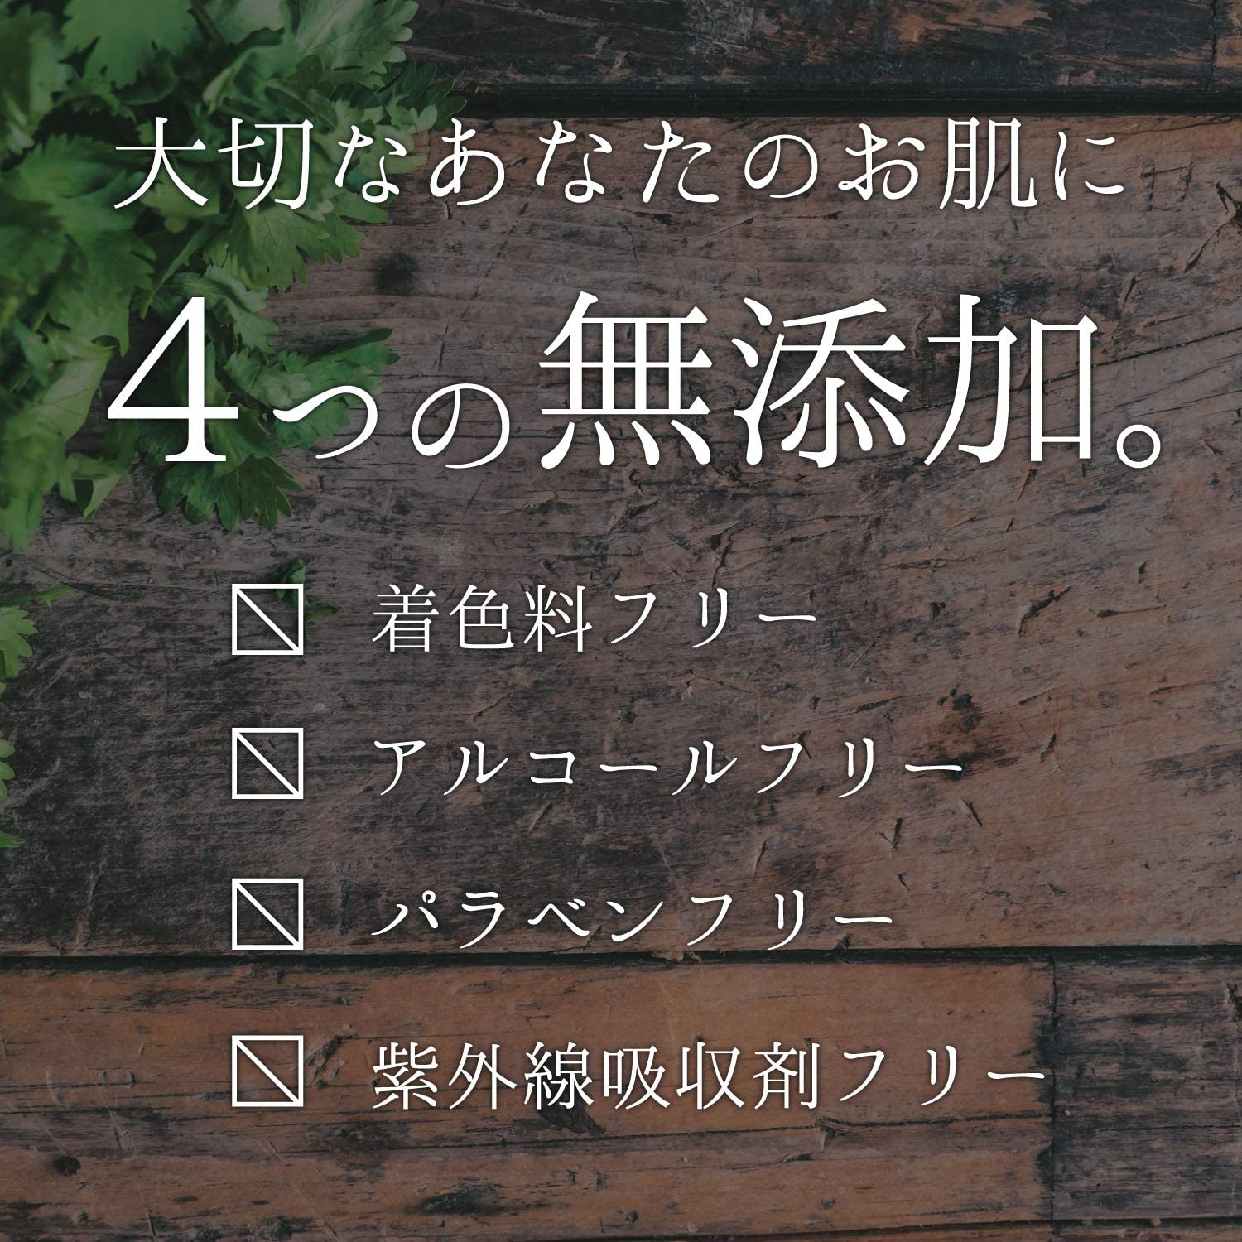 MIMURA(ミムラ) hitogata スキン セラムの商品画像12 